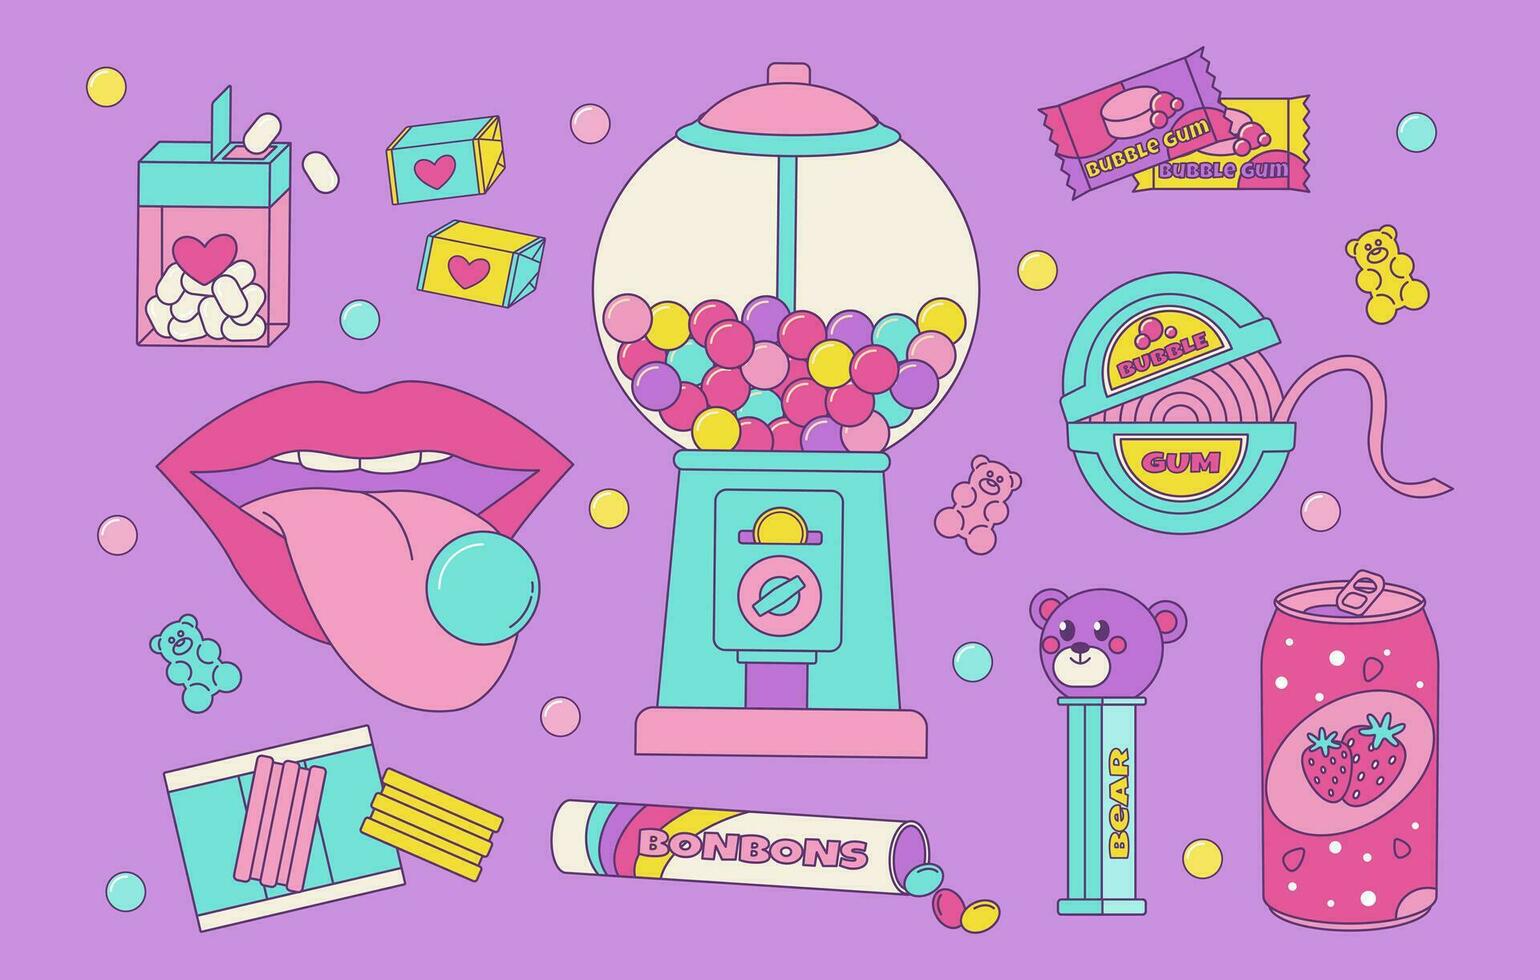 uppsättning av färgrik sötsaker, bubbla gummi från de 80s 90-talet, retro stil, nostalgisk element. vektor illustration i årgång stil